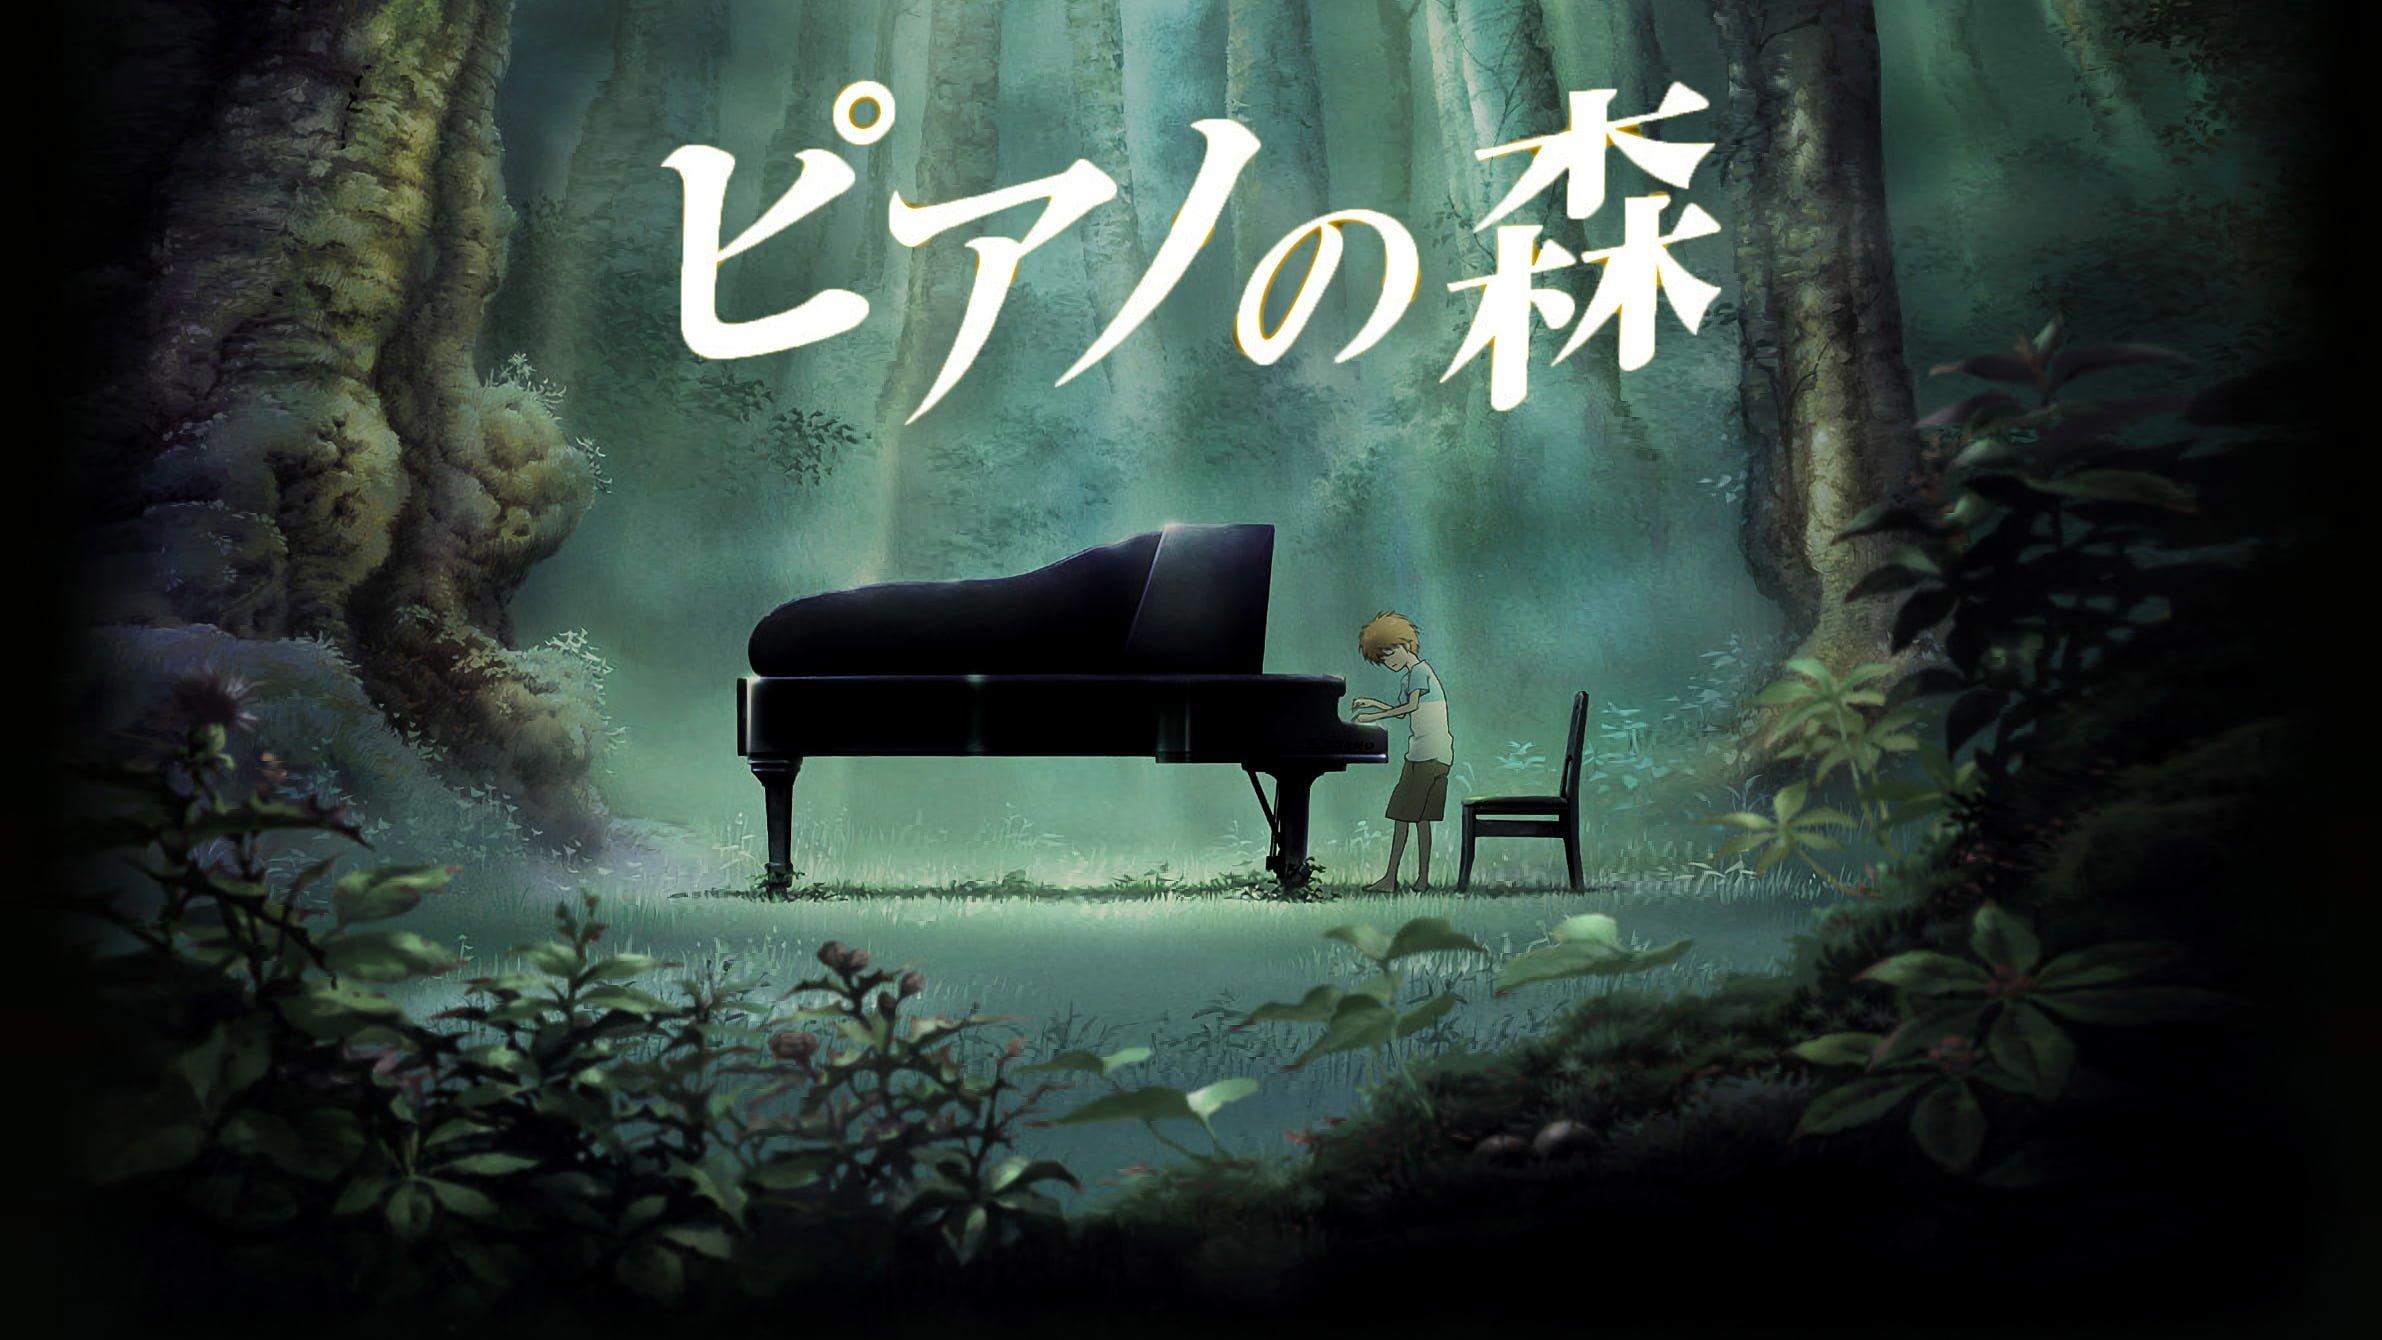 مسلسل الأنمي Piano Forest